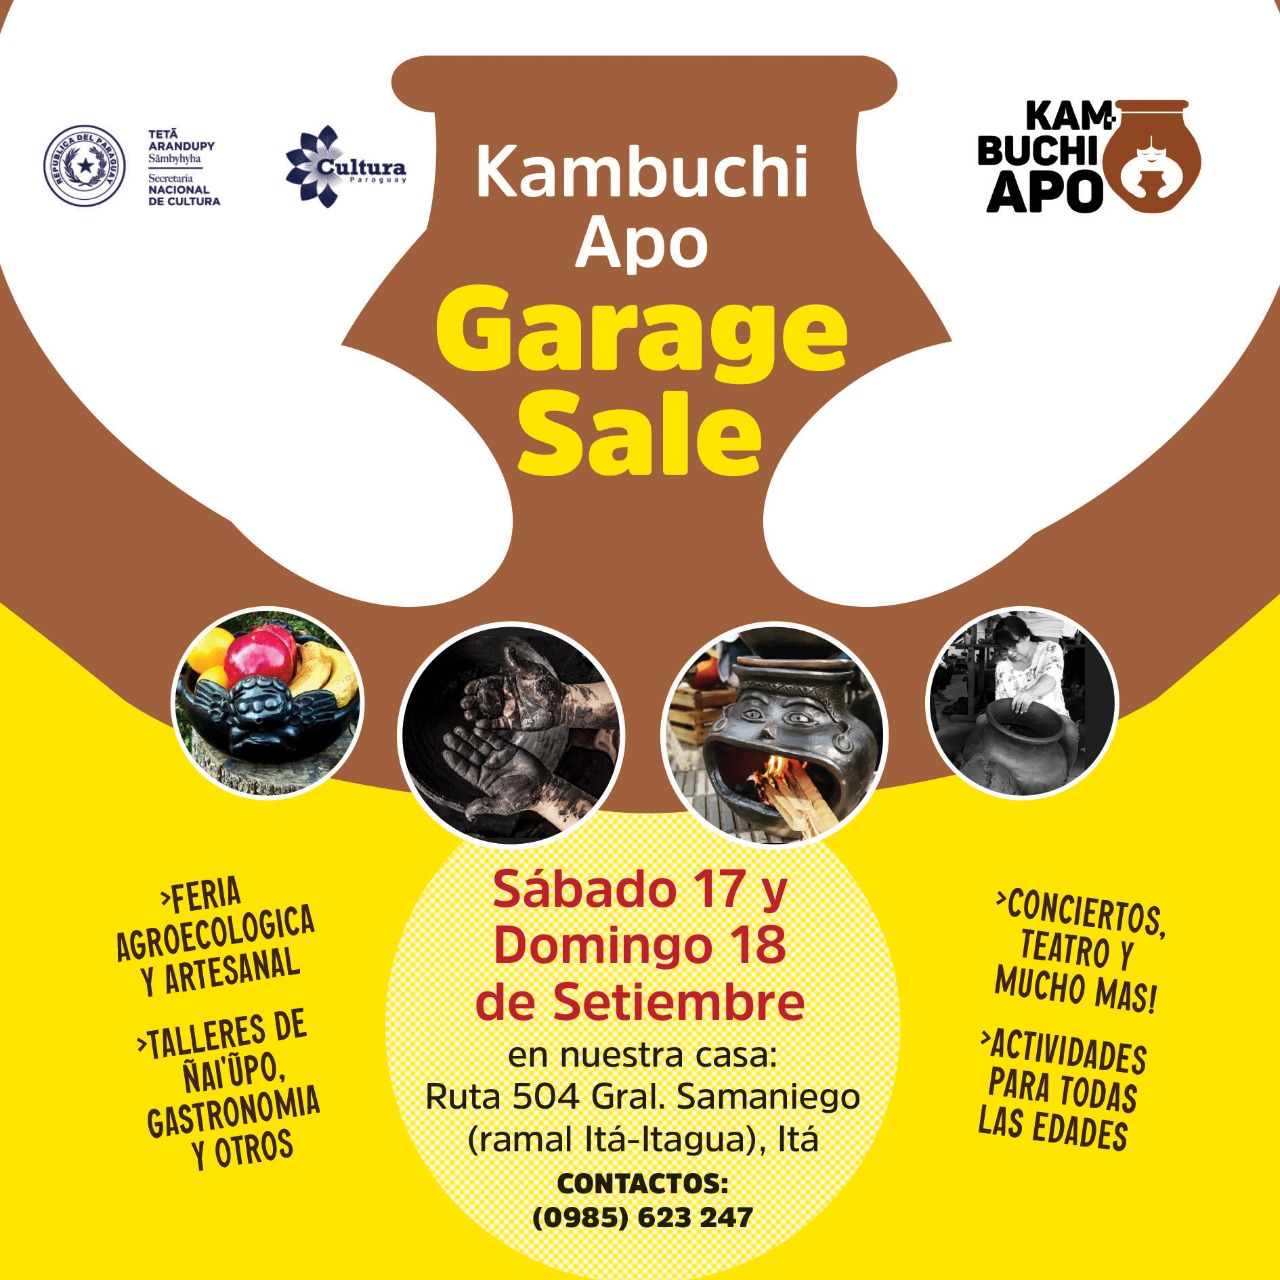 Grandes descuentos y actividades culturales, educativas y artísticas en feria de Kambuchi Apo imagen